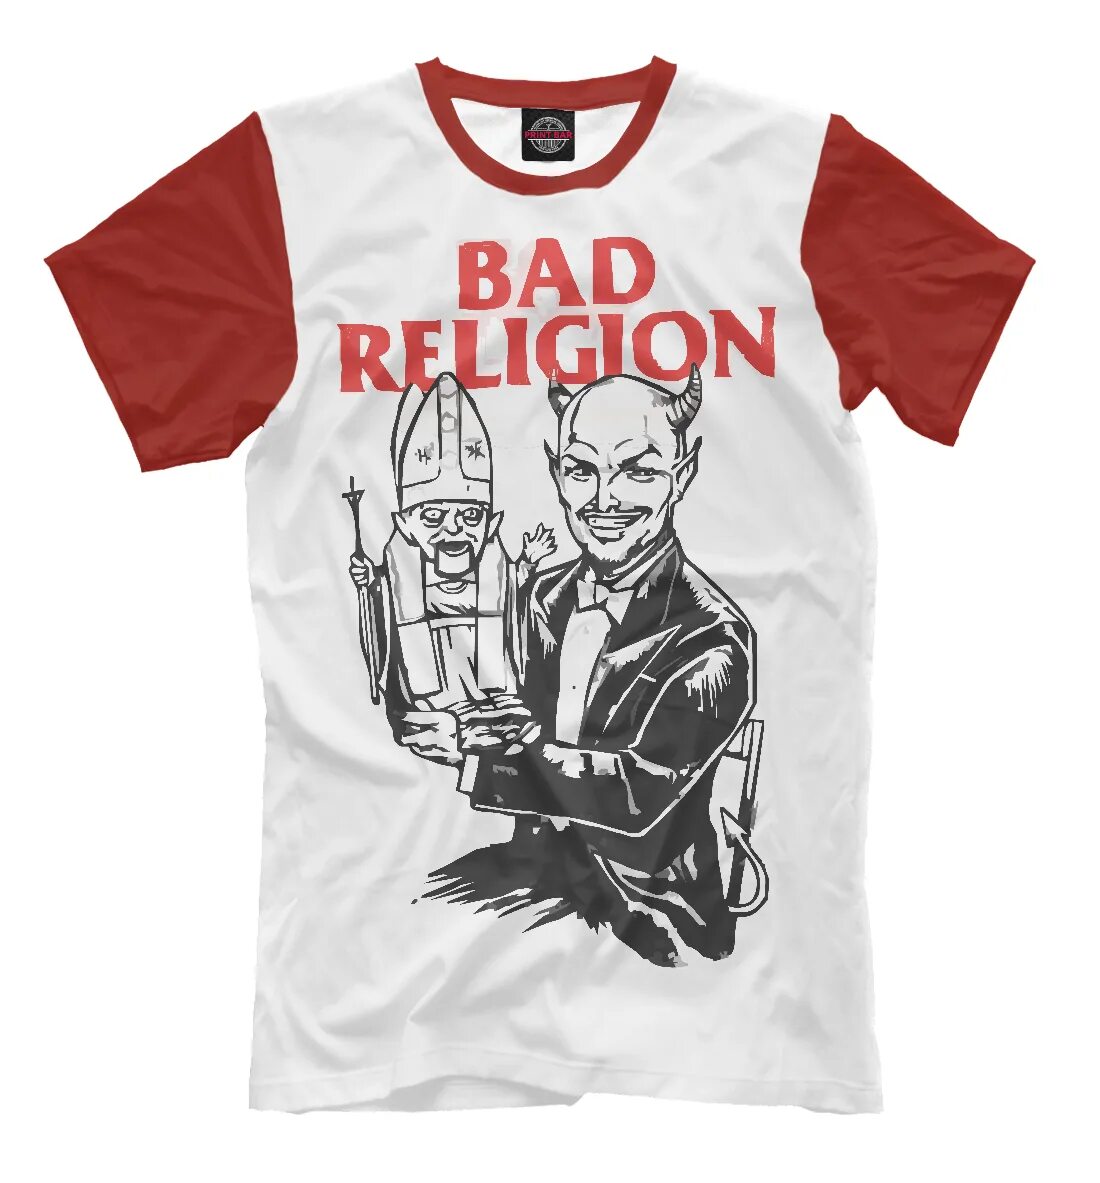 Bad collection. Bad Religion футболка. Футболка Religion мужская. Футболка хорошему мальчику плохую девочку. Bad Religion обои.